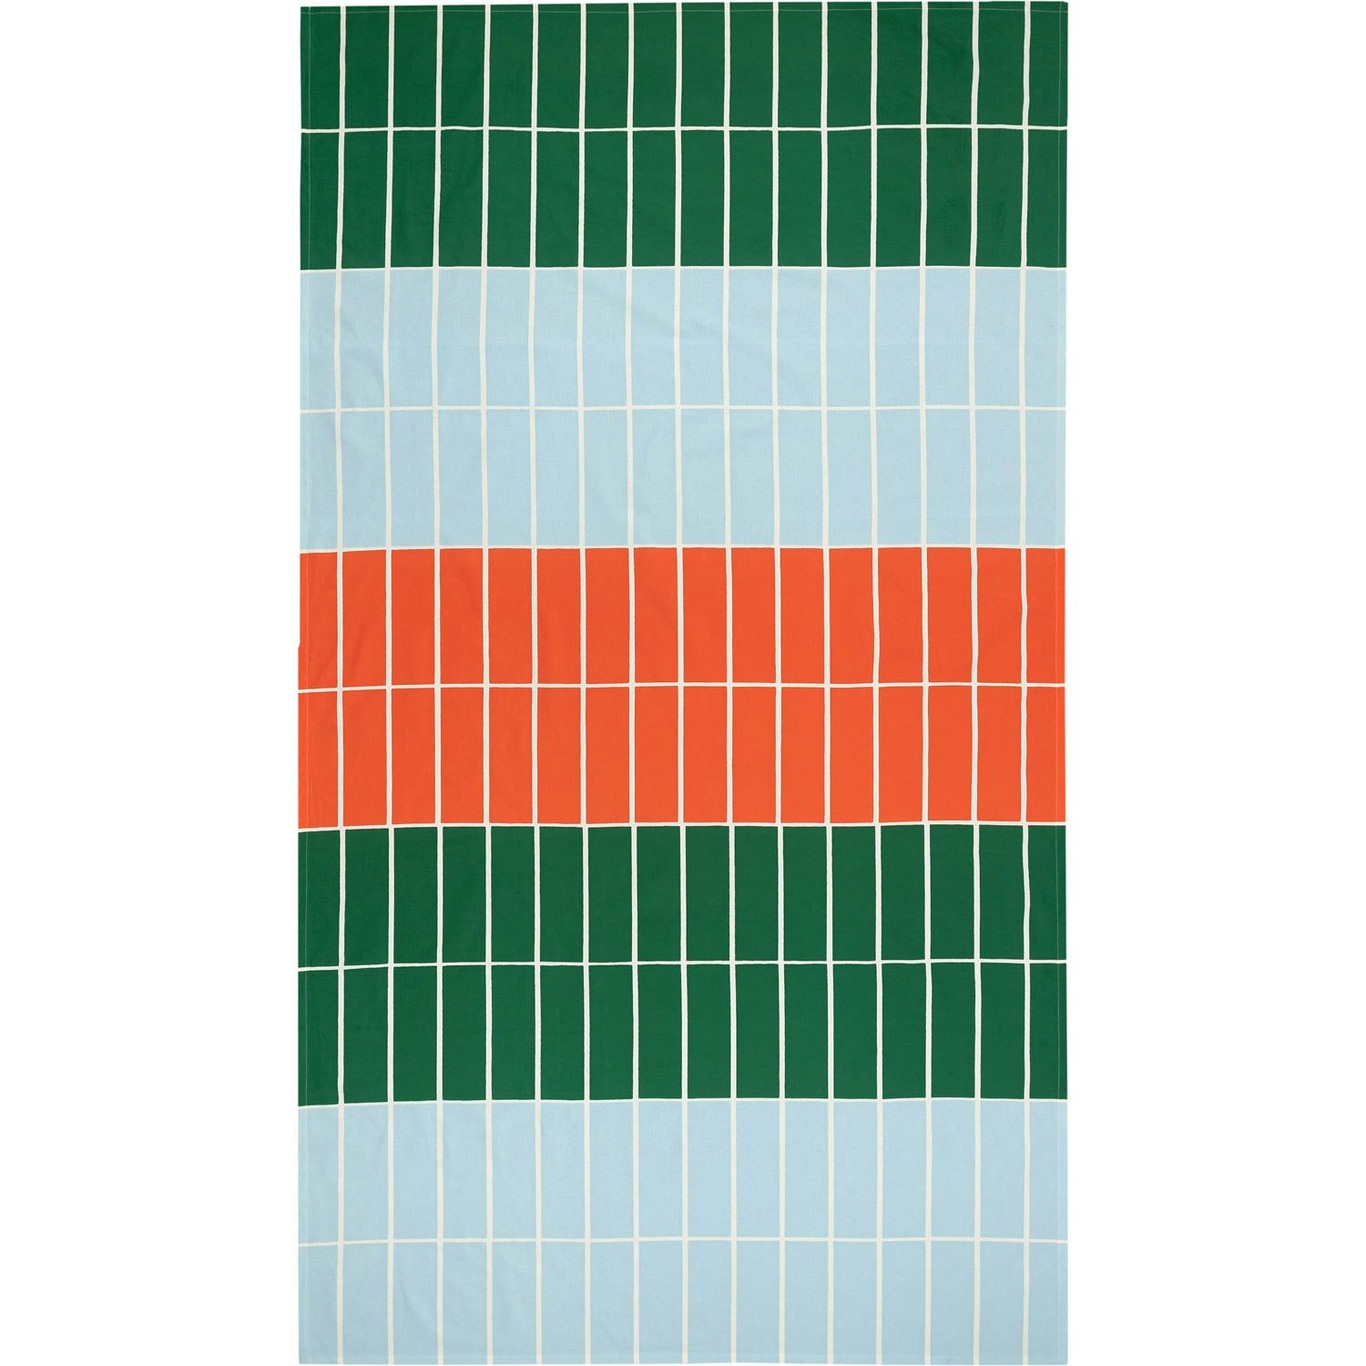 Tiiliskivi Bordsduk 135x245 cm, Orange / Ljusblå / Grön